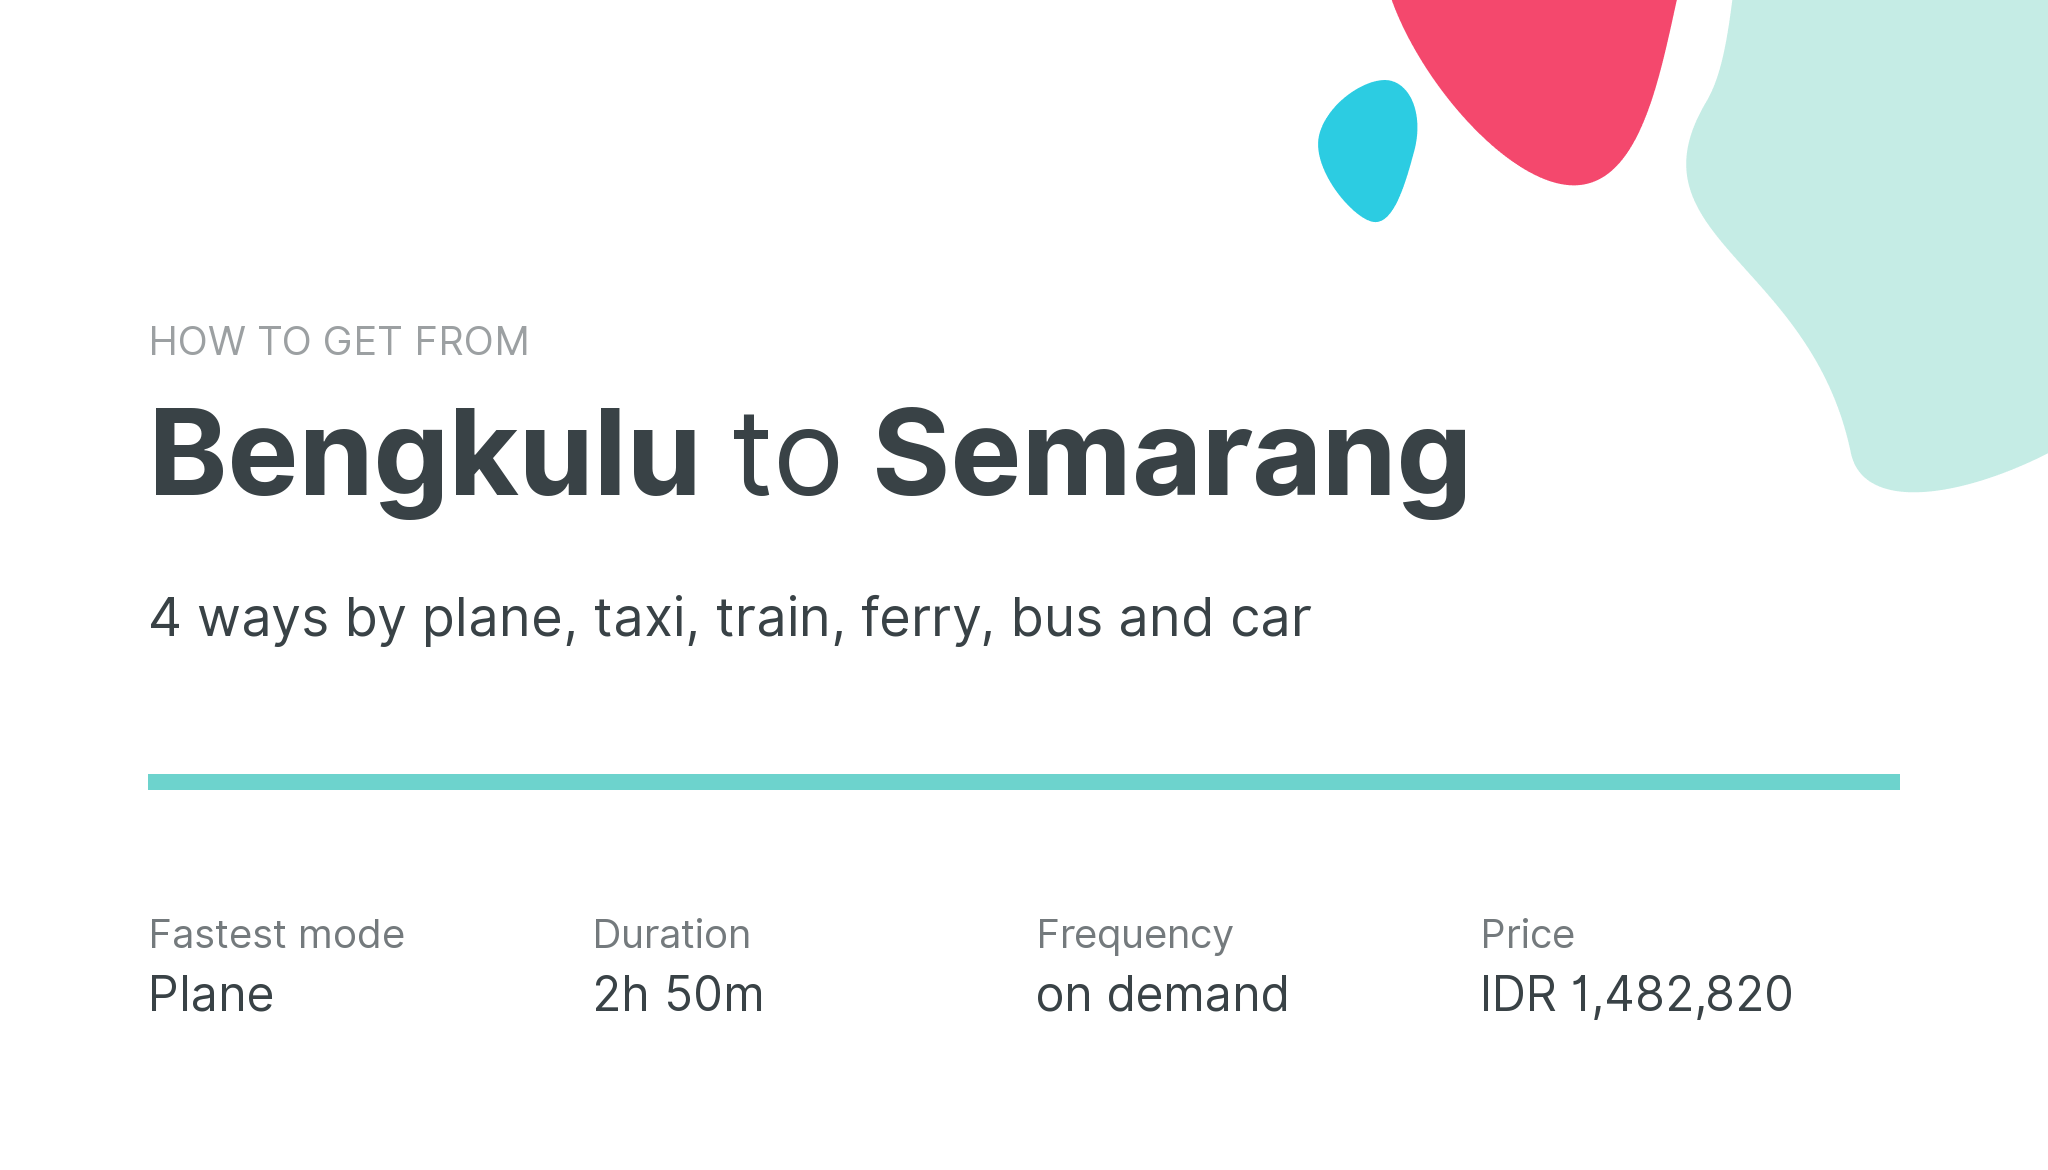 How do I get from Bengkulu to Semarang